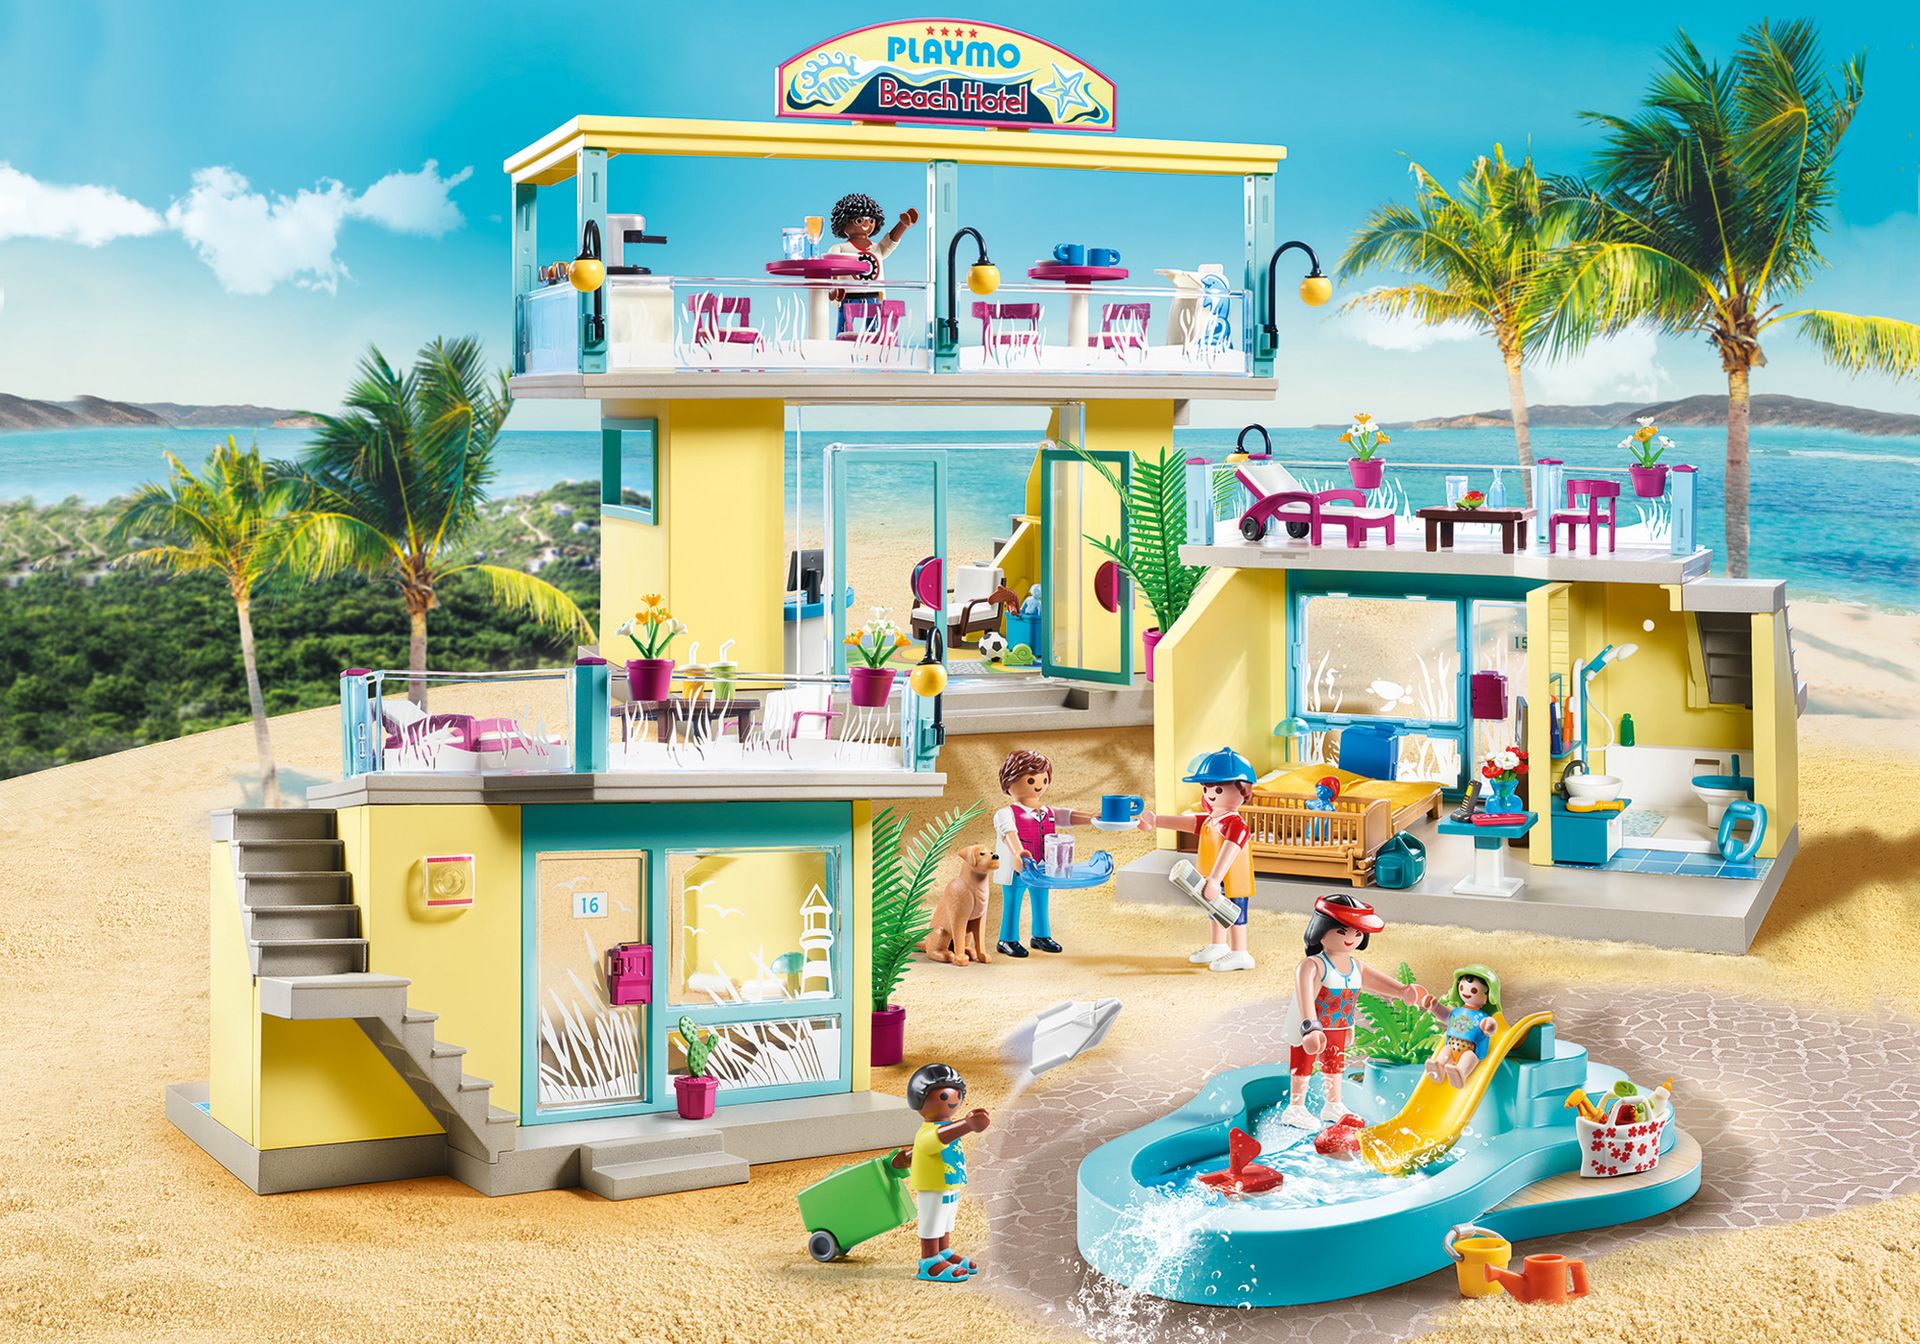 Playmobil Family Fun Beach Hotel Set's zum aussuchen Neu & OVP 